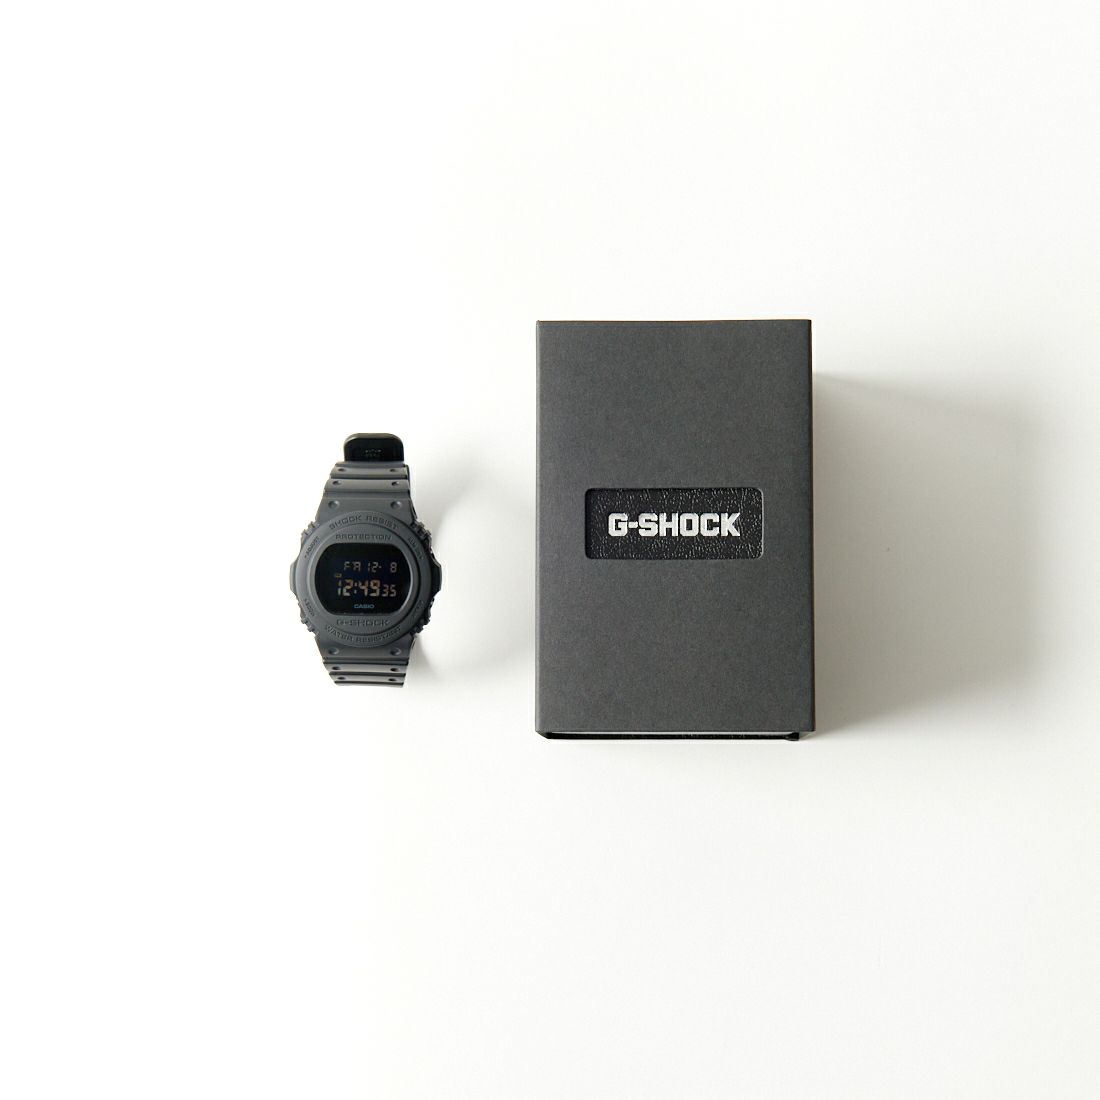 G-SHOCK [ジーショック] デジタルウォッチ [DW-5750E-1BJF] BLACK